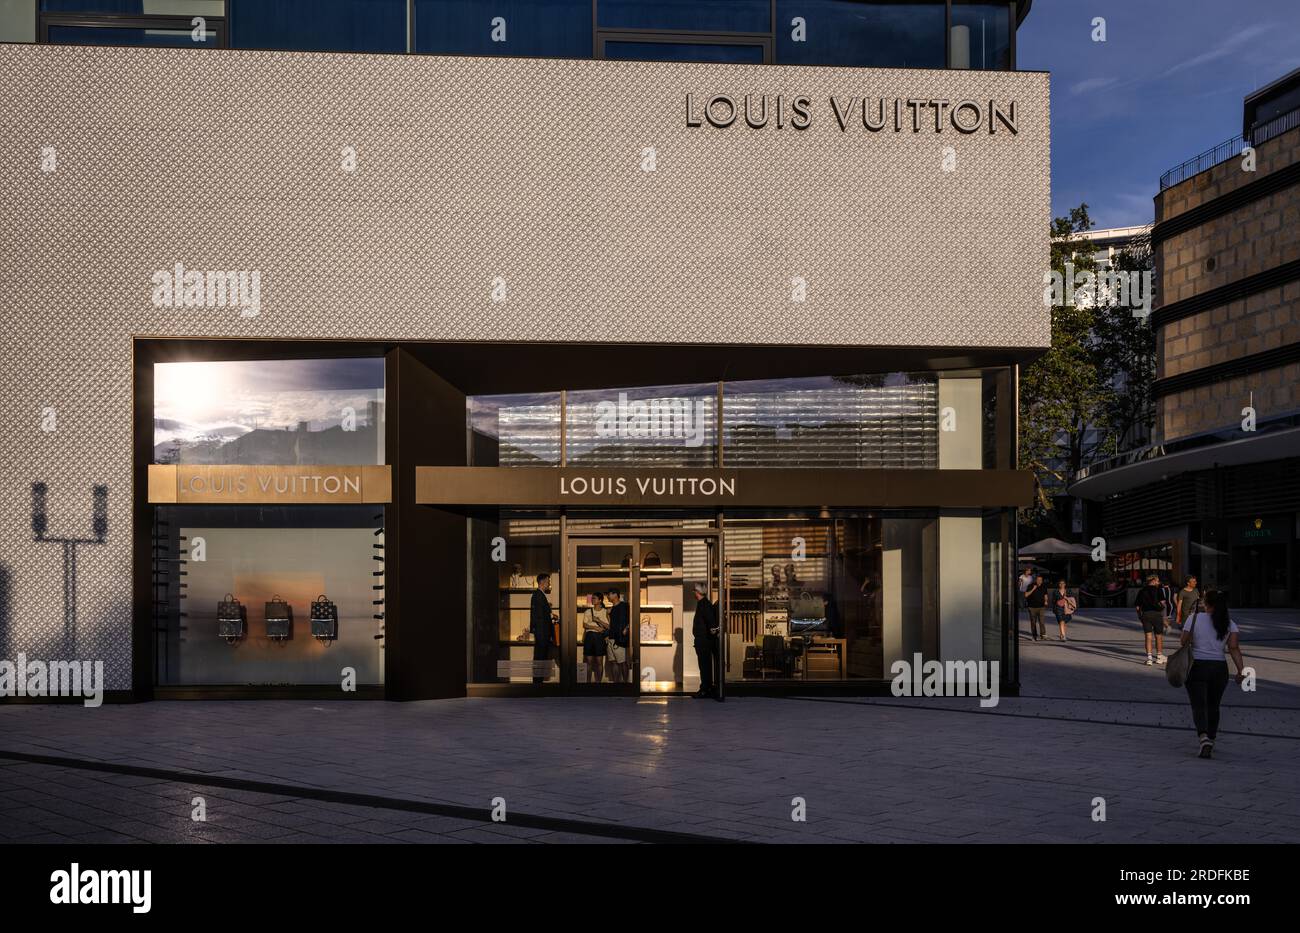 Louis Vuitton Brand Store, Logo, Store, Dorotheen Quartier, DOQU, Shopping Mall, Stuttgart, Baden-Wuerttemberg Stock Photo